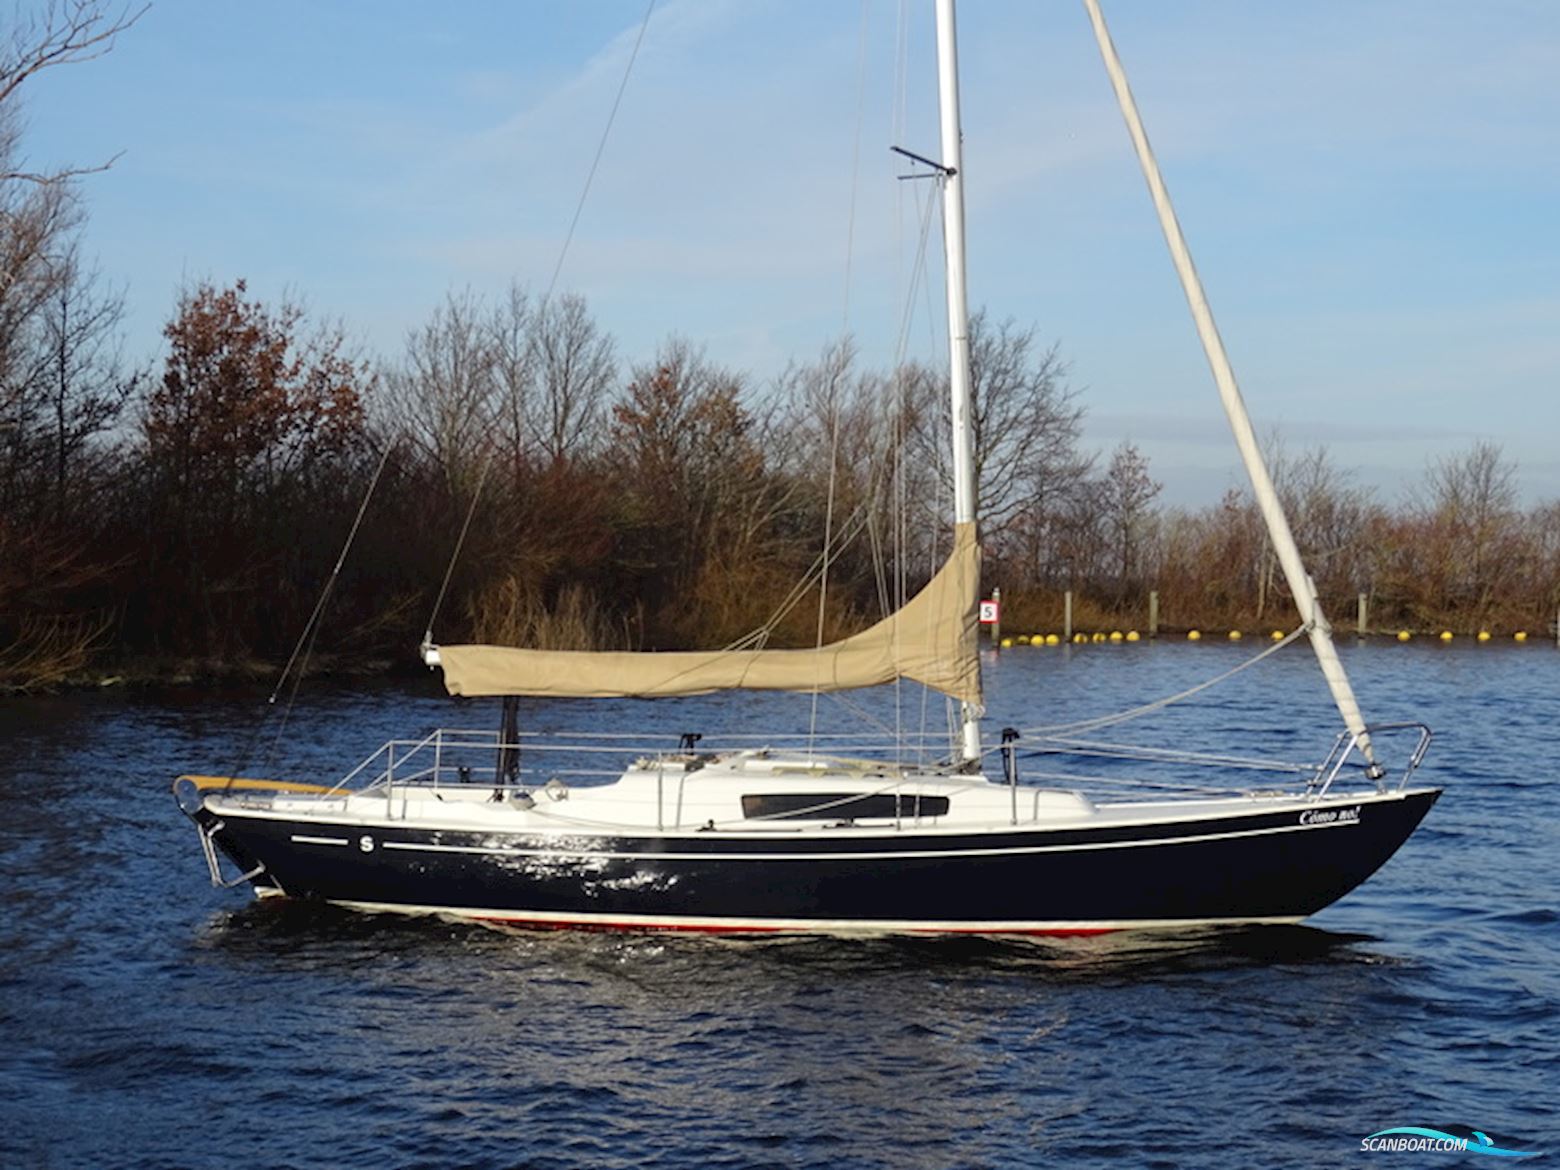 Seacamper IF (Marieholm) Zeilboten 2019, met Nani 2.10 motor, The Netherlands